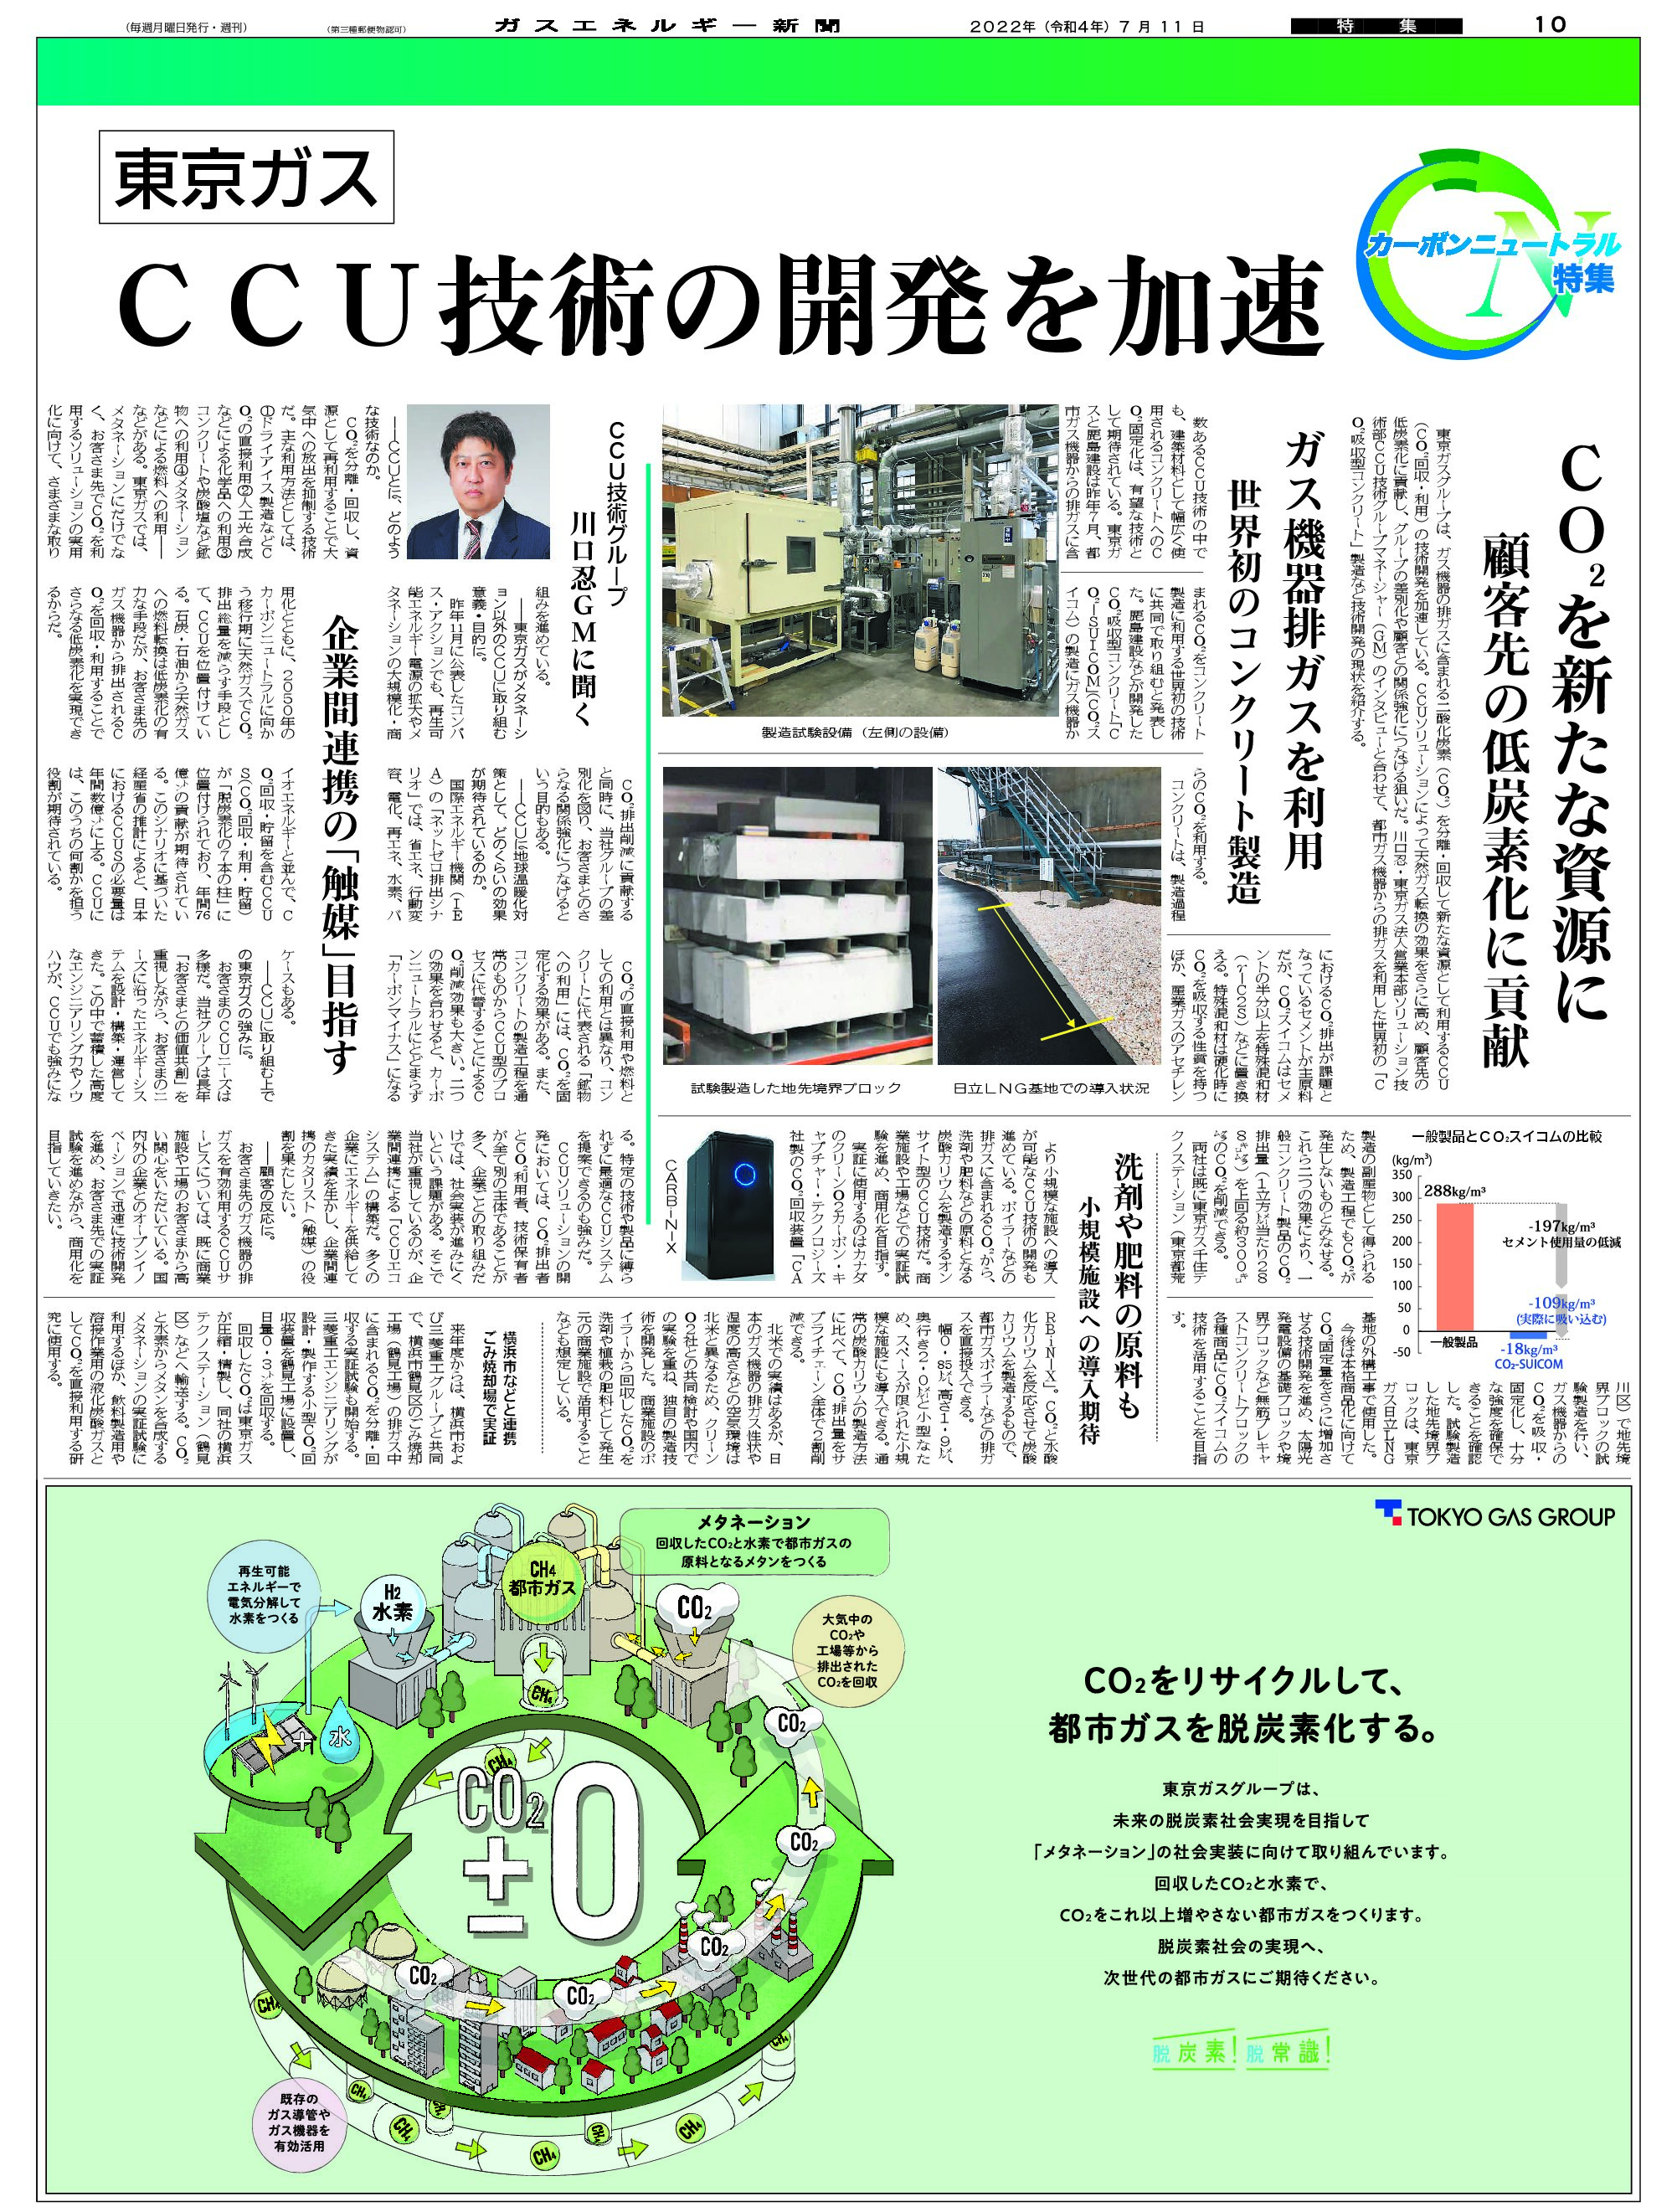 【カーボンニュートラル特集】CCU技術の開発を加速——CO2を新たな資源に、顧客先の低炭素化に貢献/東京ガス